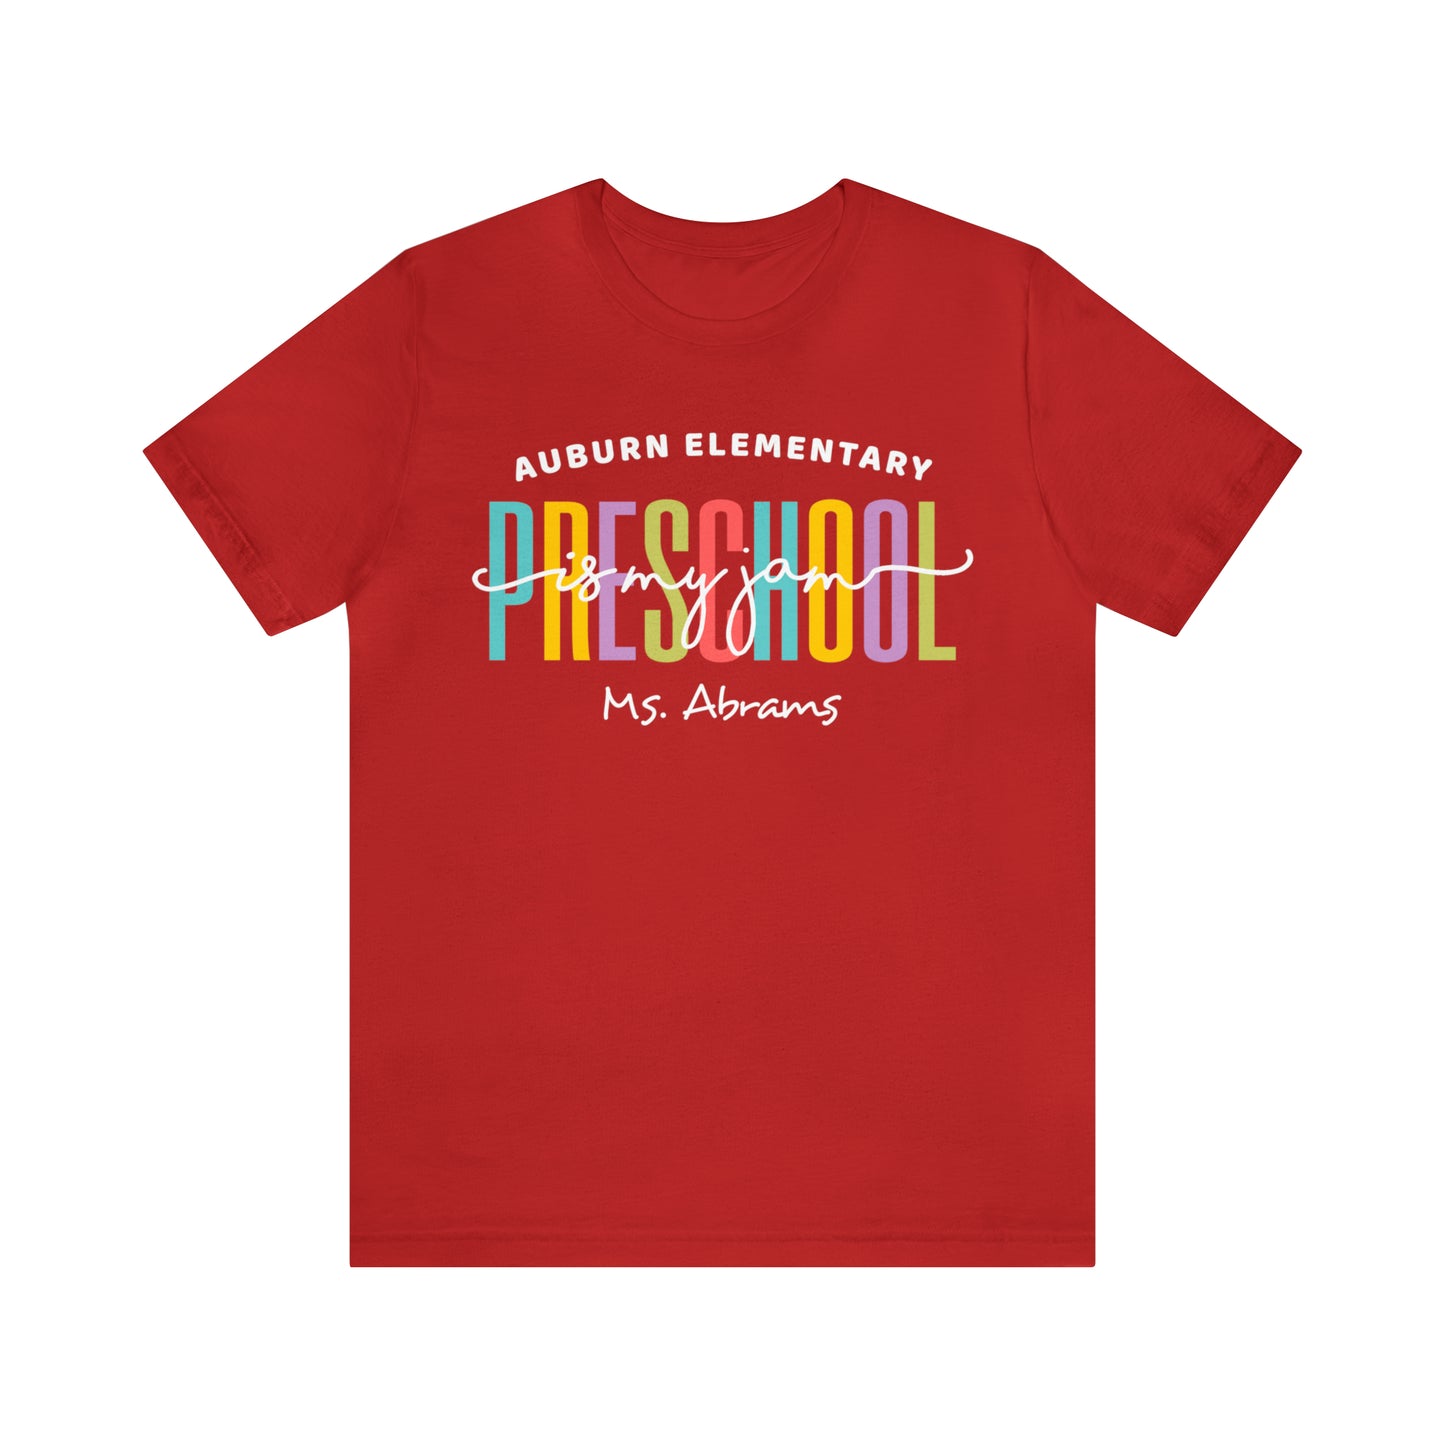 Preschool is my jam Teacher Team Shirt, School Squad Teacher Shirt